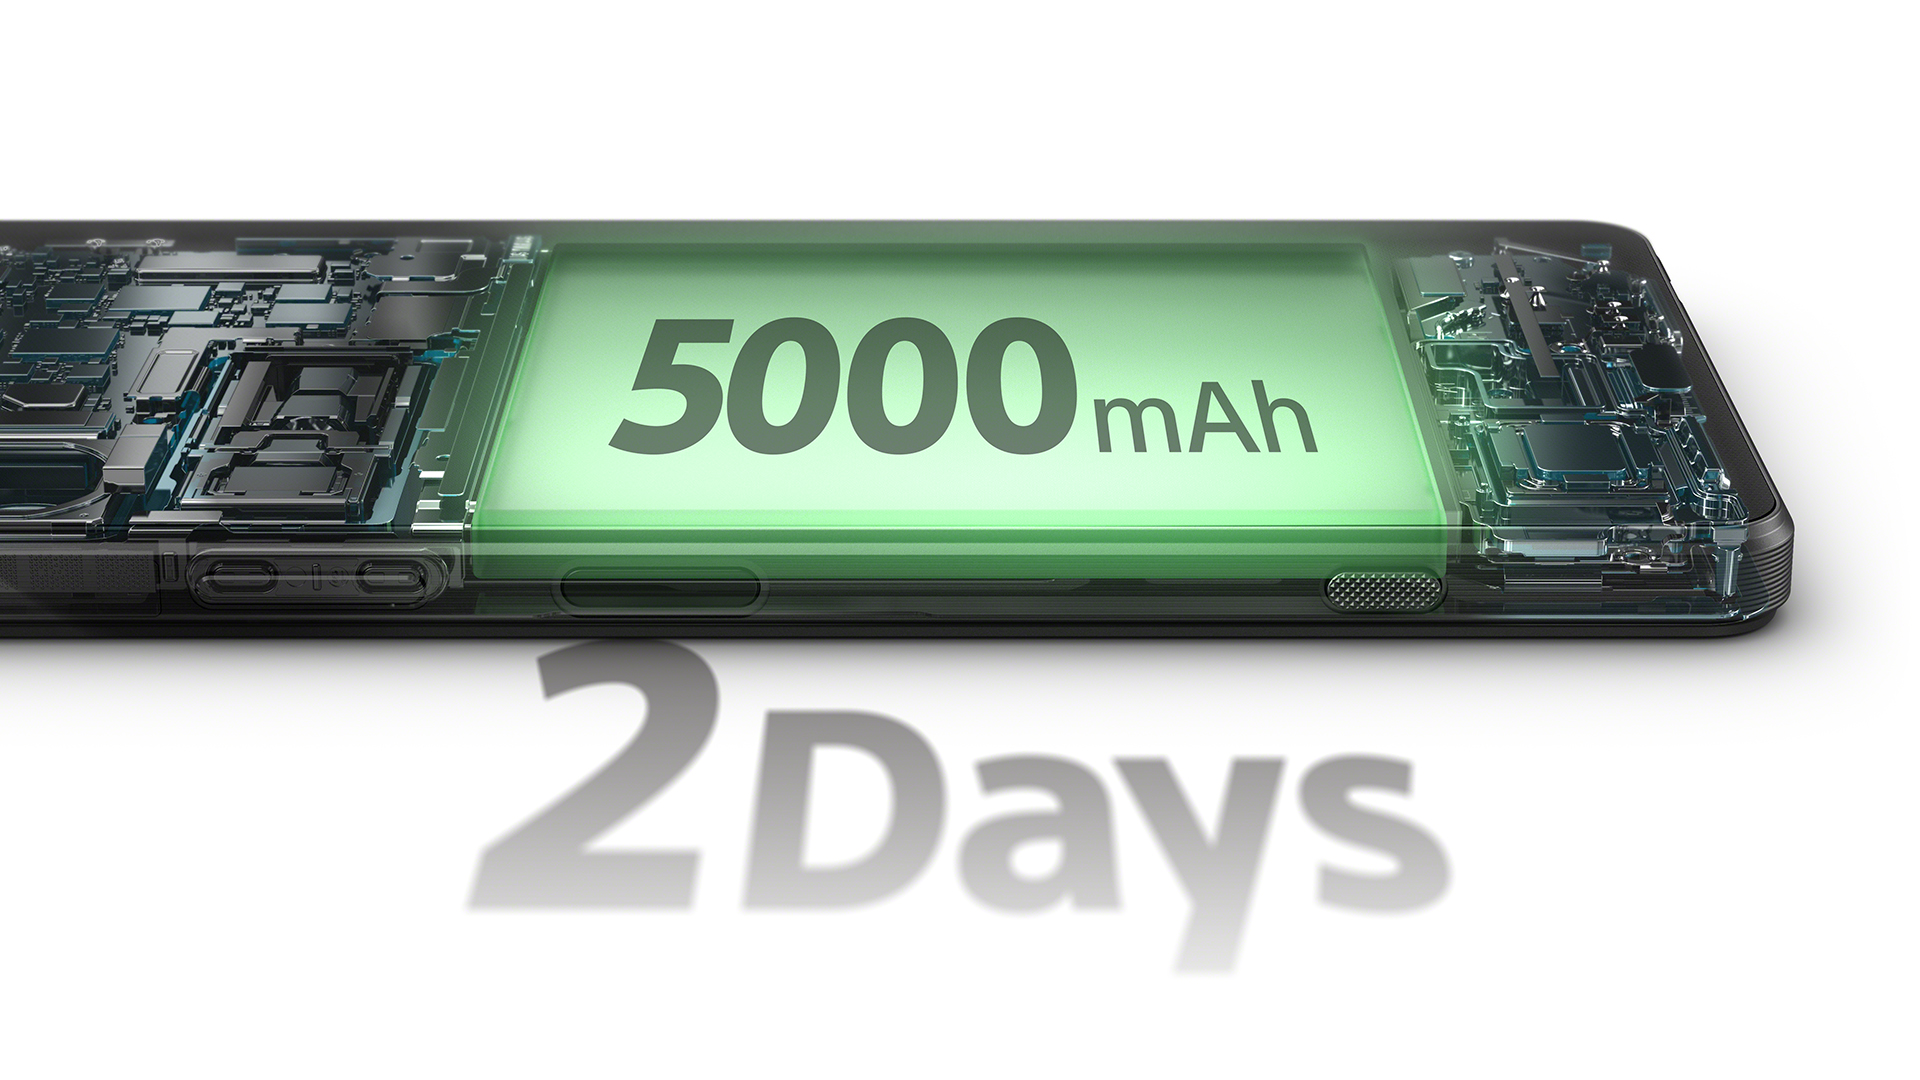 Sony 推出全新旗艦手機 Xperia 1 VI 導入最新 AI 功能全面提升相機及螢幕效能 搭載全新連續光學望遠變焦鏡頭 @3C 達人廖阿輝